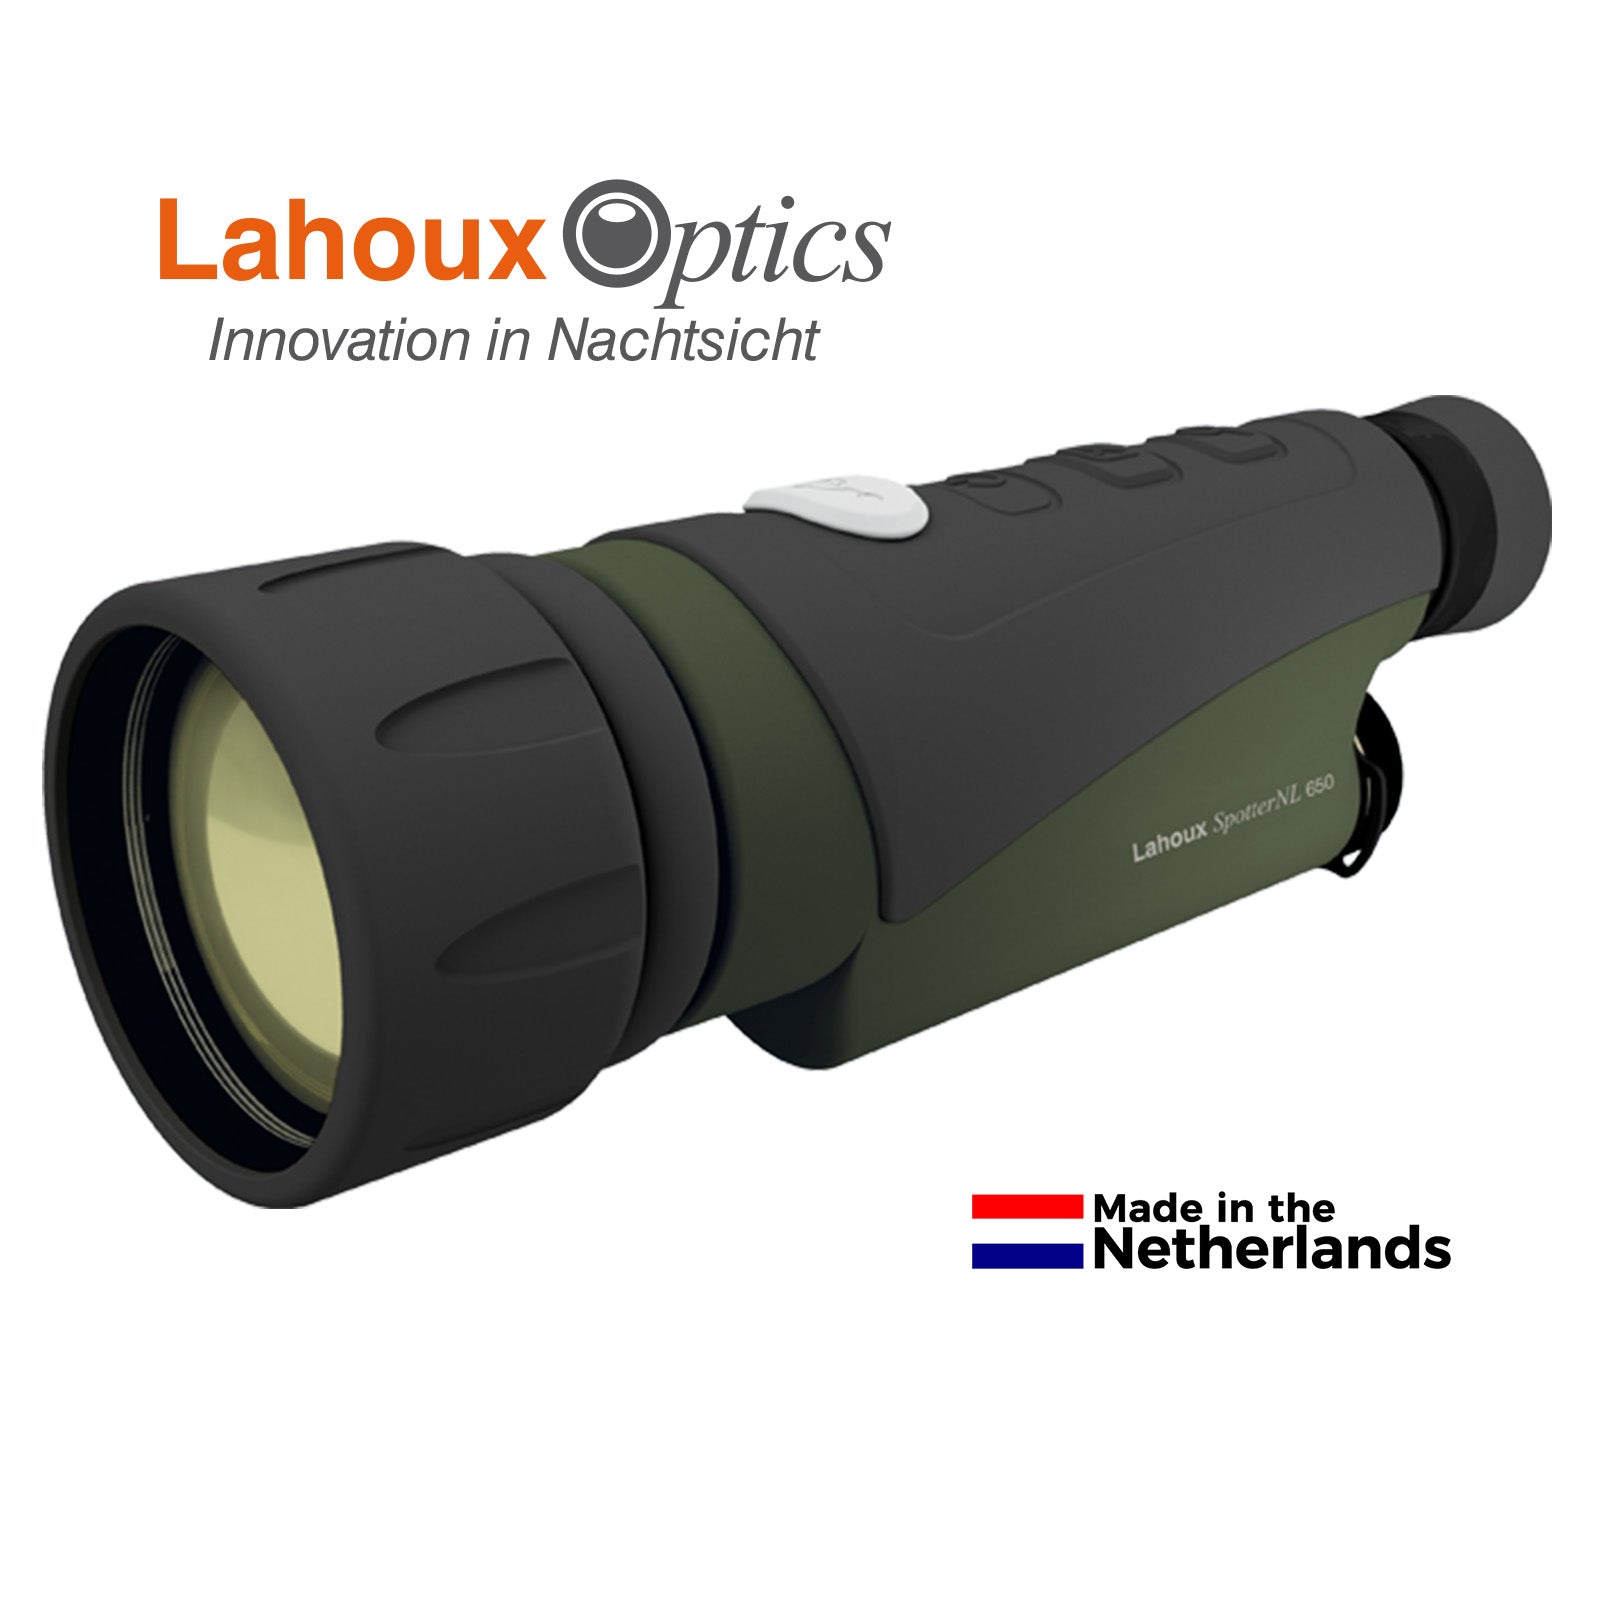 Es handelt sich hier um LAHOUX Spotter NL 650 Wärmebildkamera für die Jagd.